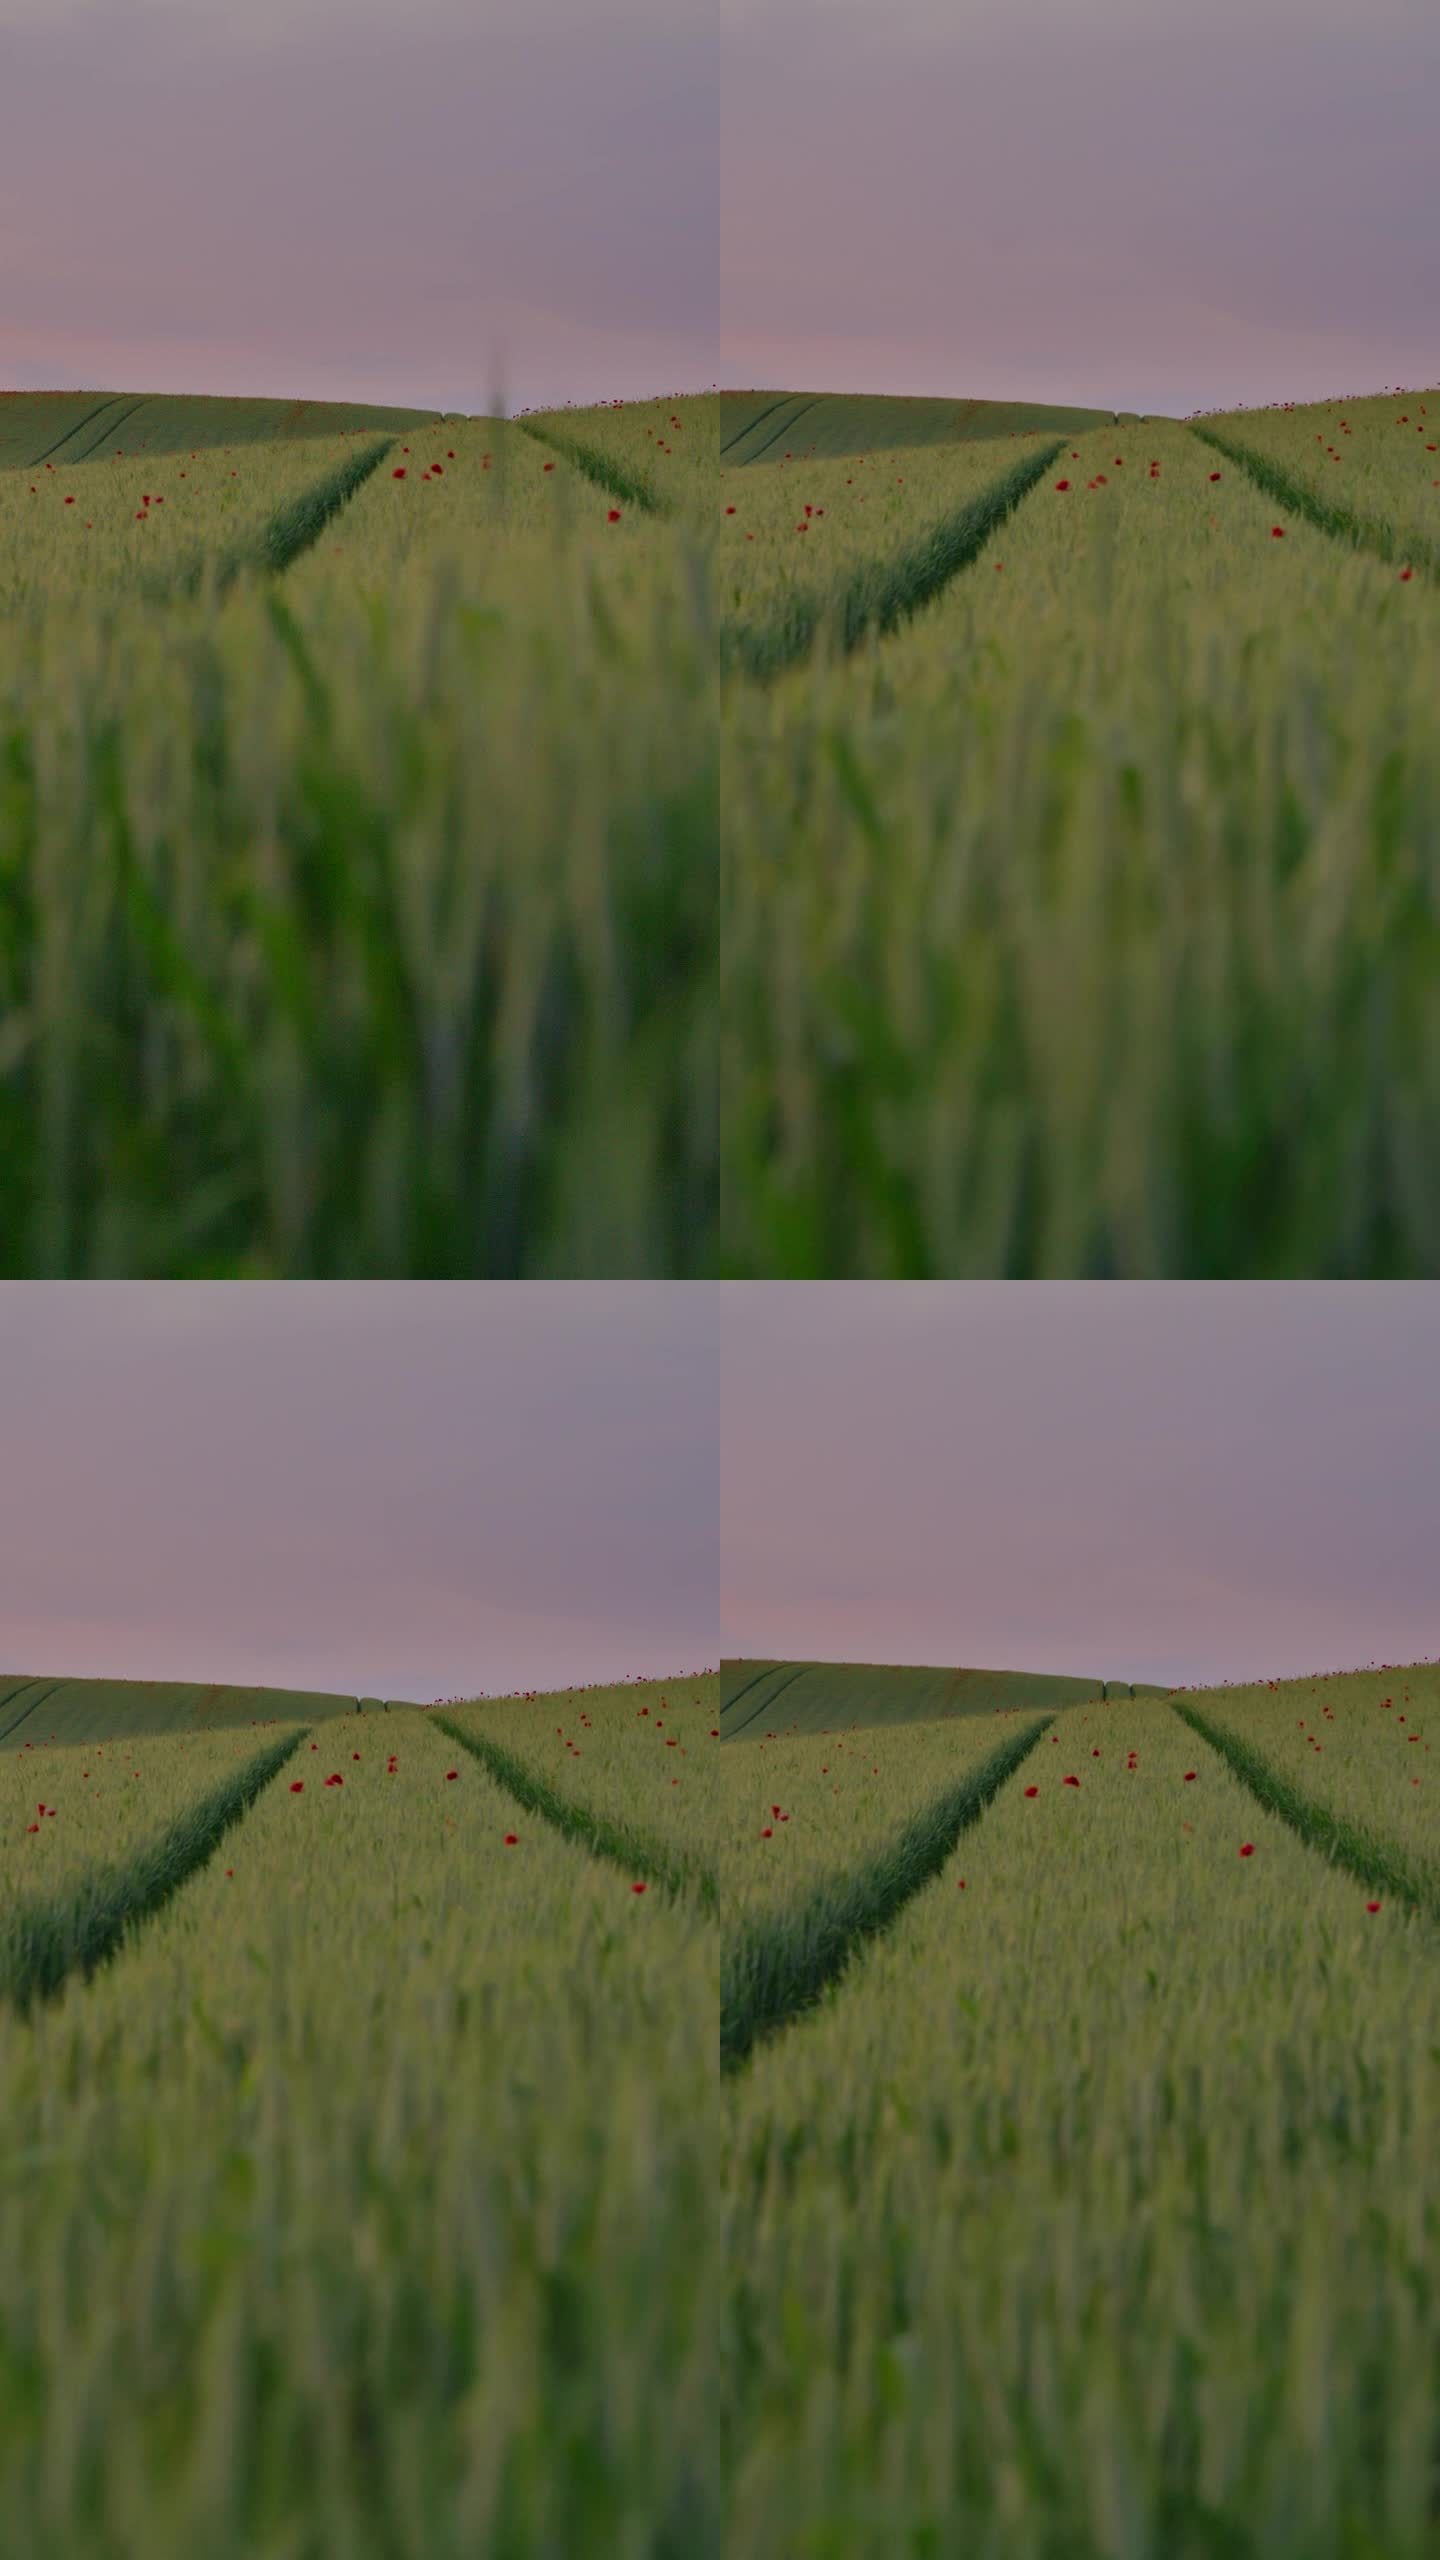 黄昏的痕迹:轮胎的痕迹蜿蜒穿过一个郁郁葱葱的麦田点缀着罂粟花在黄昏